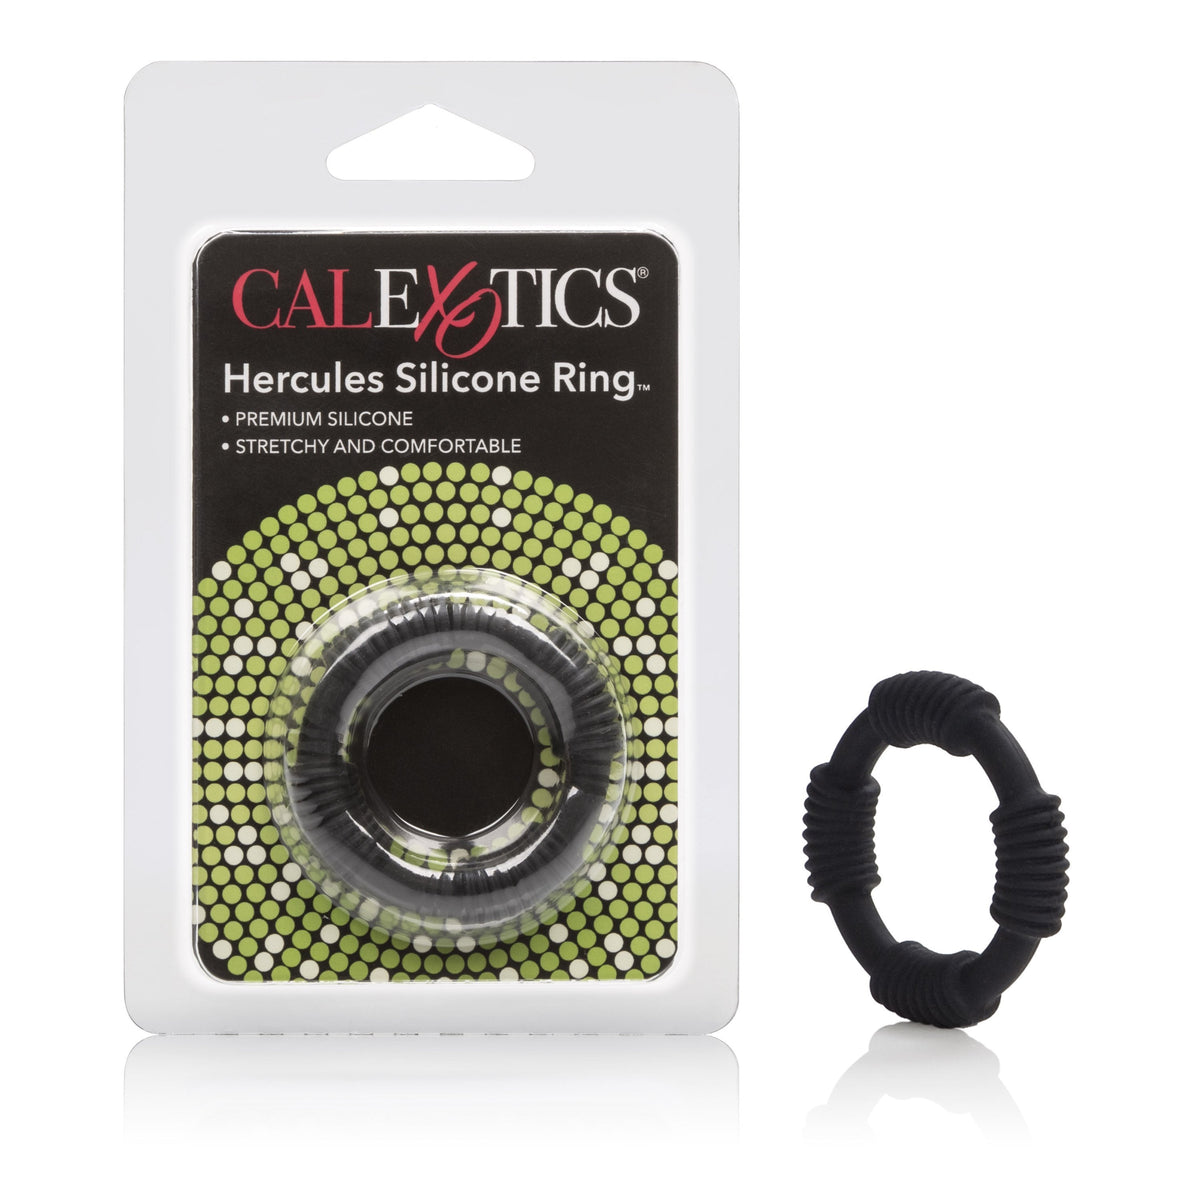 California Exotics - Adonis Hercules Silicone Cock Ring (Black) -  Silicone Cock Ring (Non Vibration)  Durio.sg